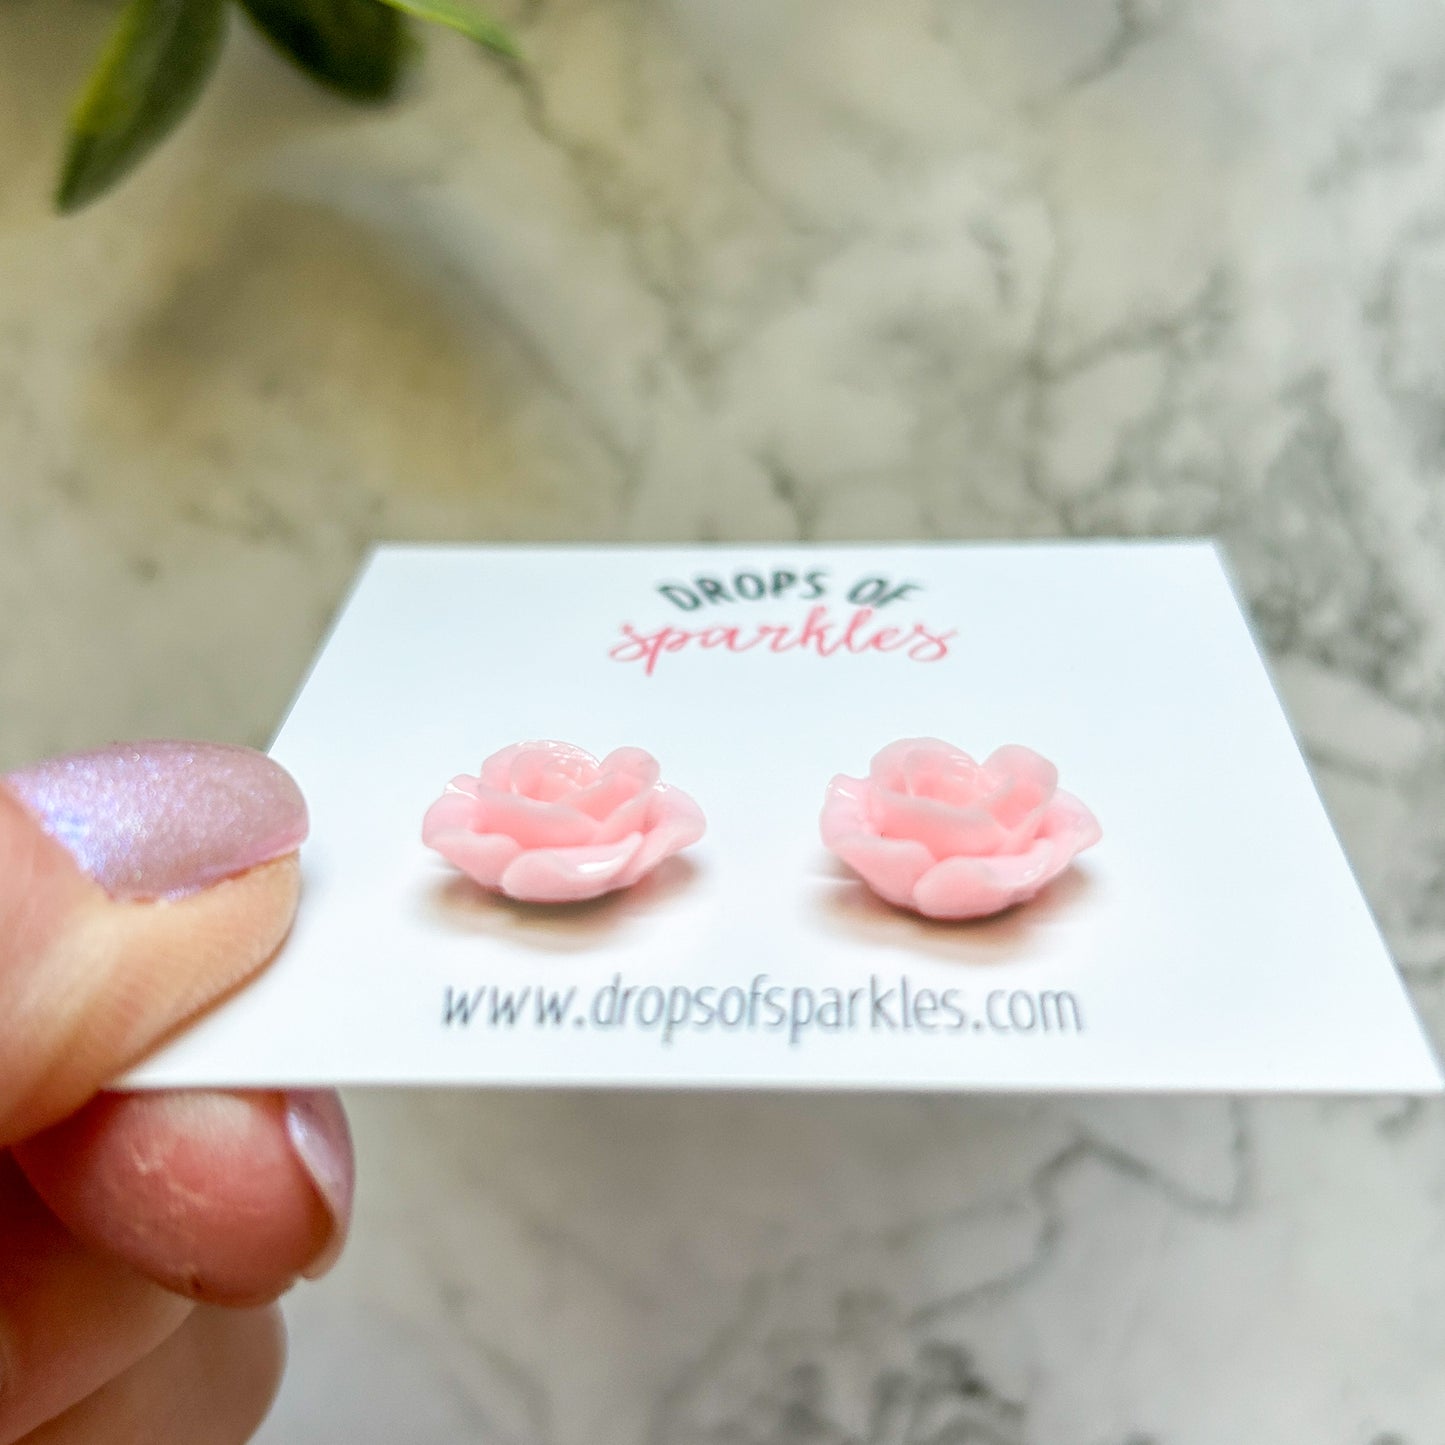 Pale pink 3D rose stud earrings